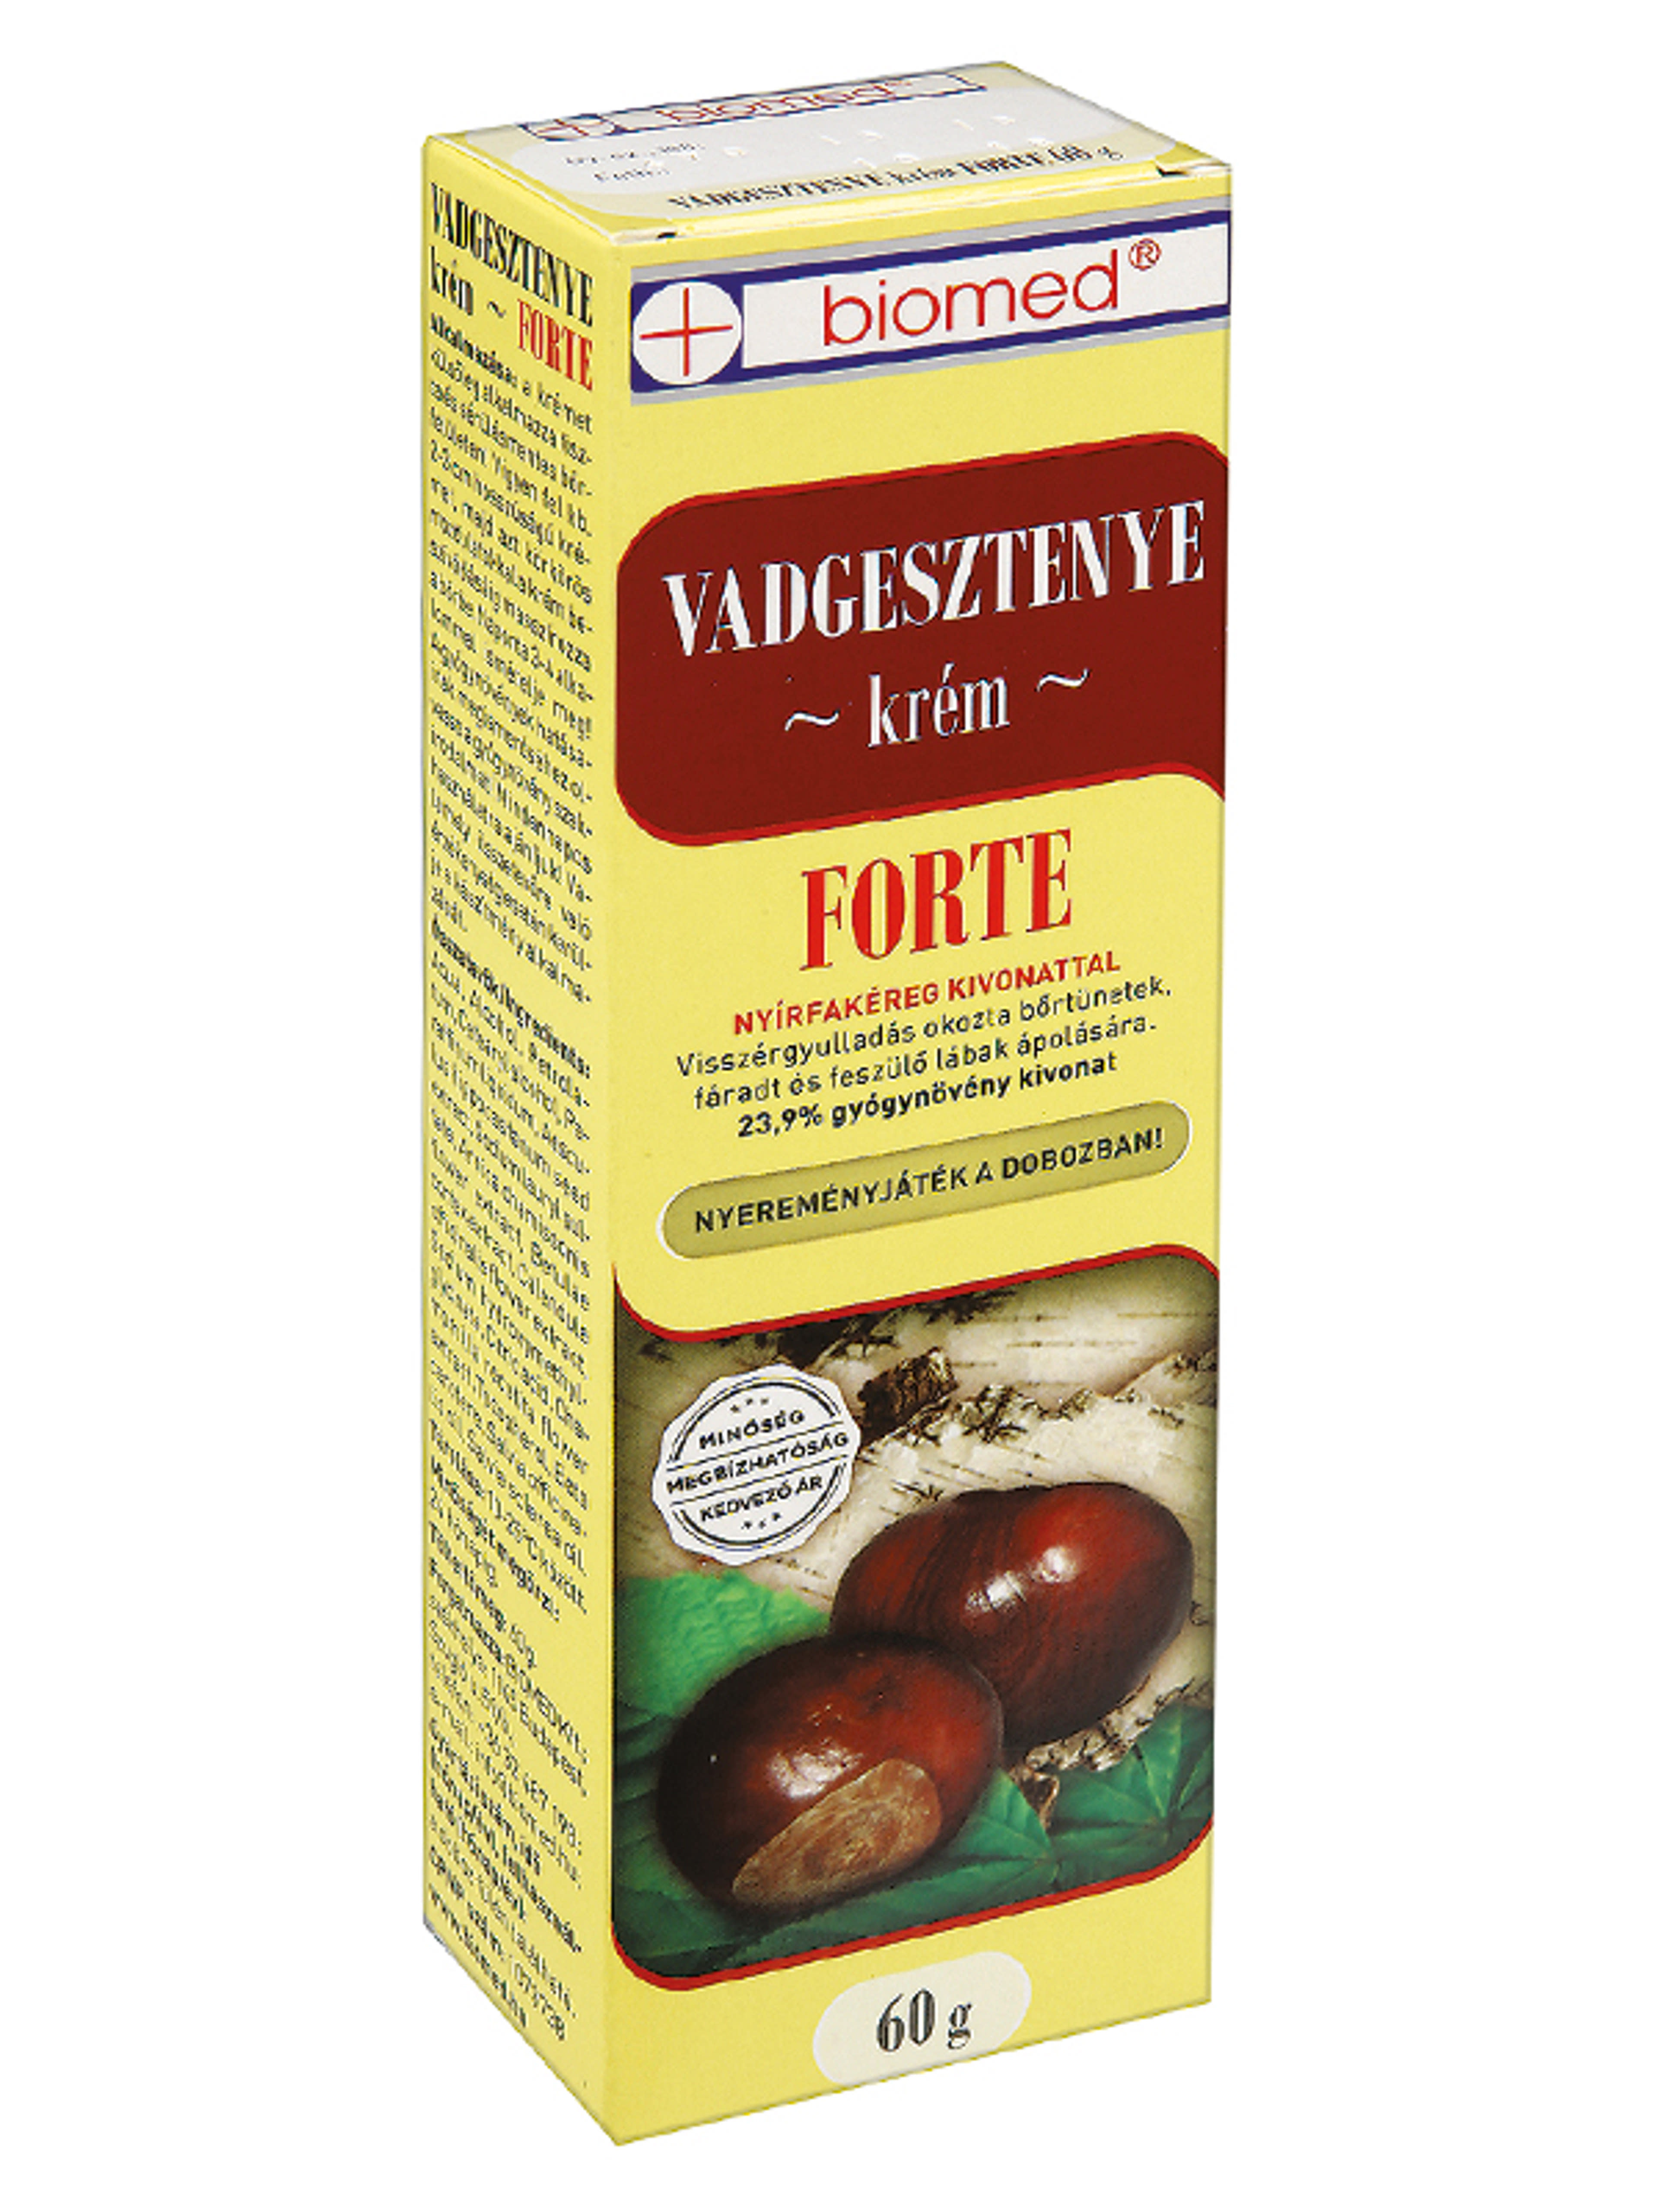 Biomed Vadgesztenye Forte Krém - 60 g